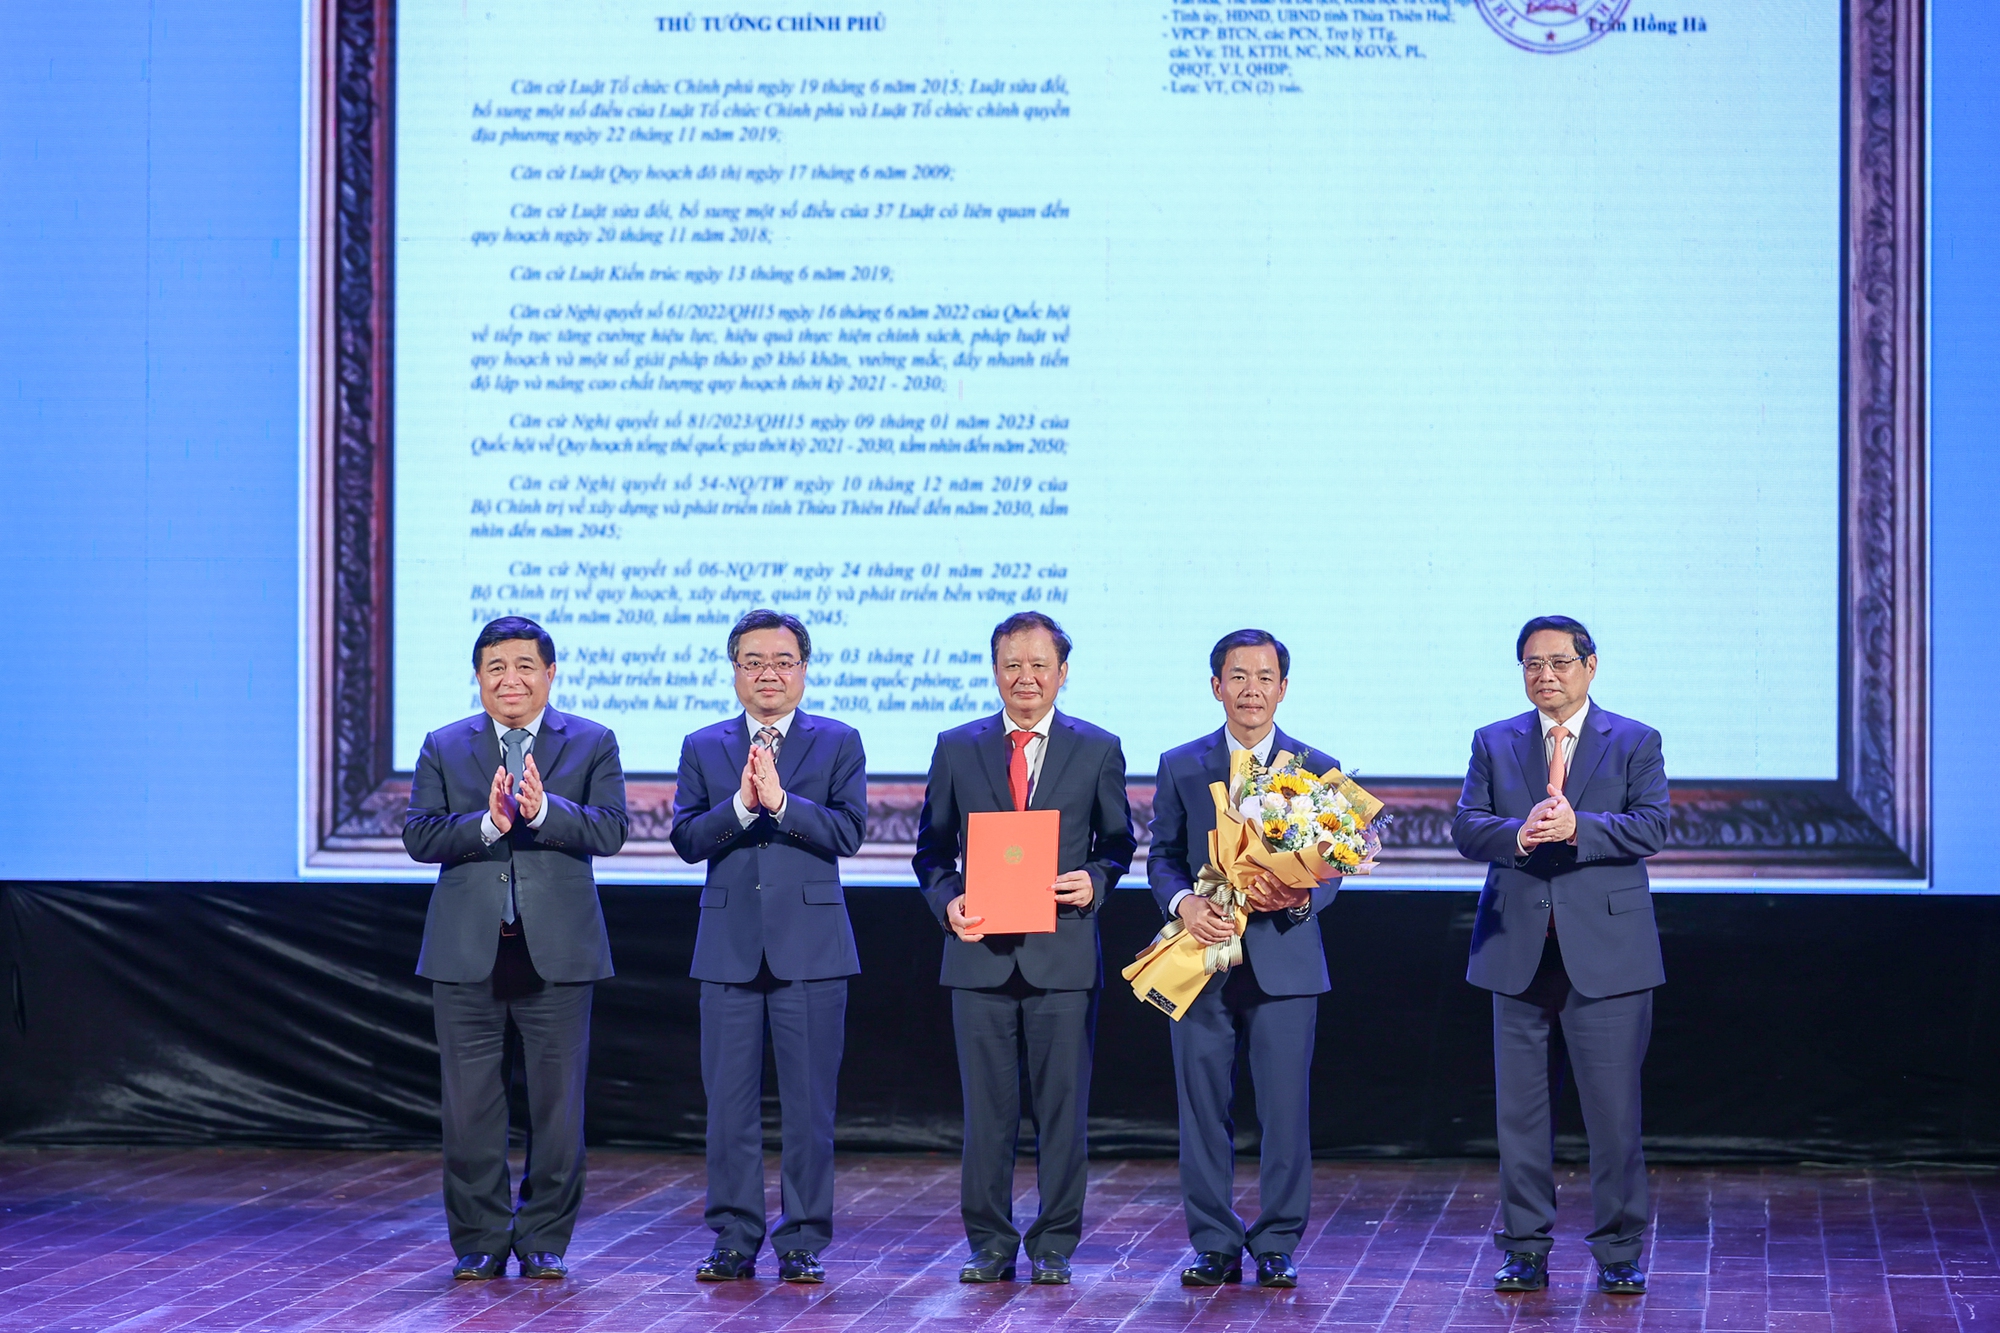 Thủ tướng Chính phủ trao Quyết định phê duyệt Quy hoạch chung đô thị tỉnh Thừa Thiên Huế đến năm 2045, tầm nhìn đến năm 2065 cho lãnh đạo tỉnh Thừa Thiên Huế - Ảnh: VGP/Nhật Bắc